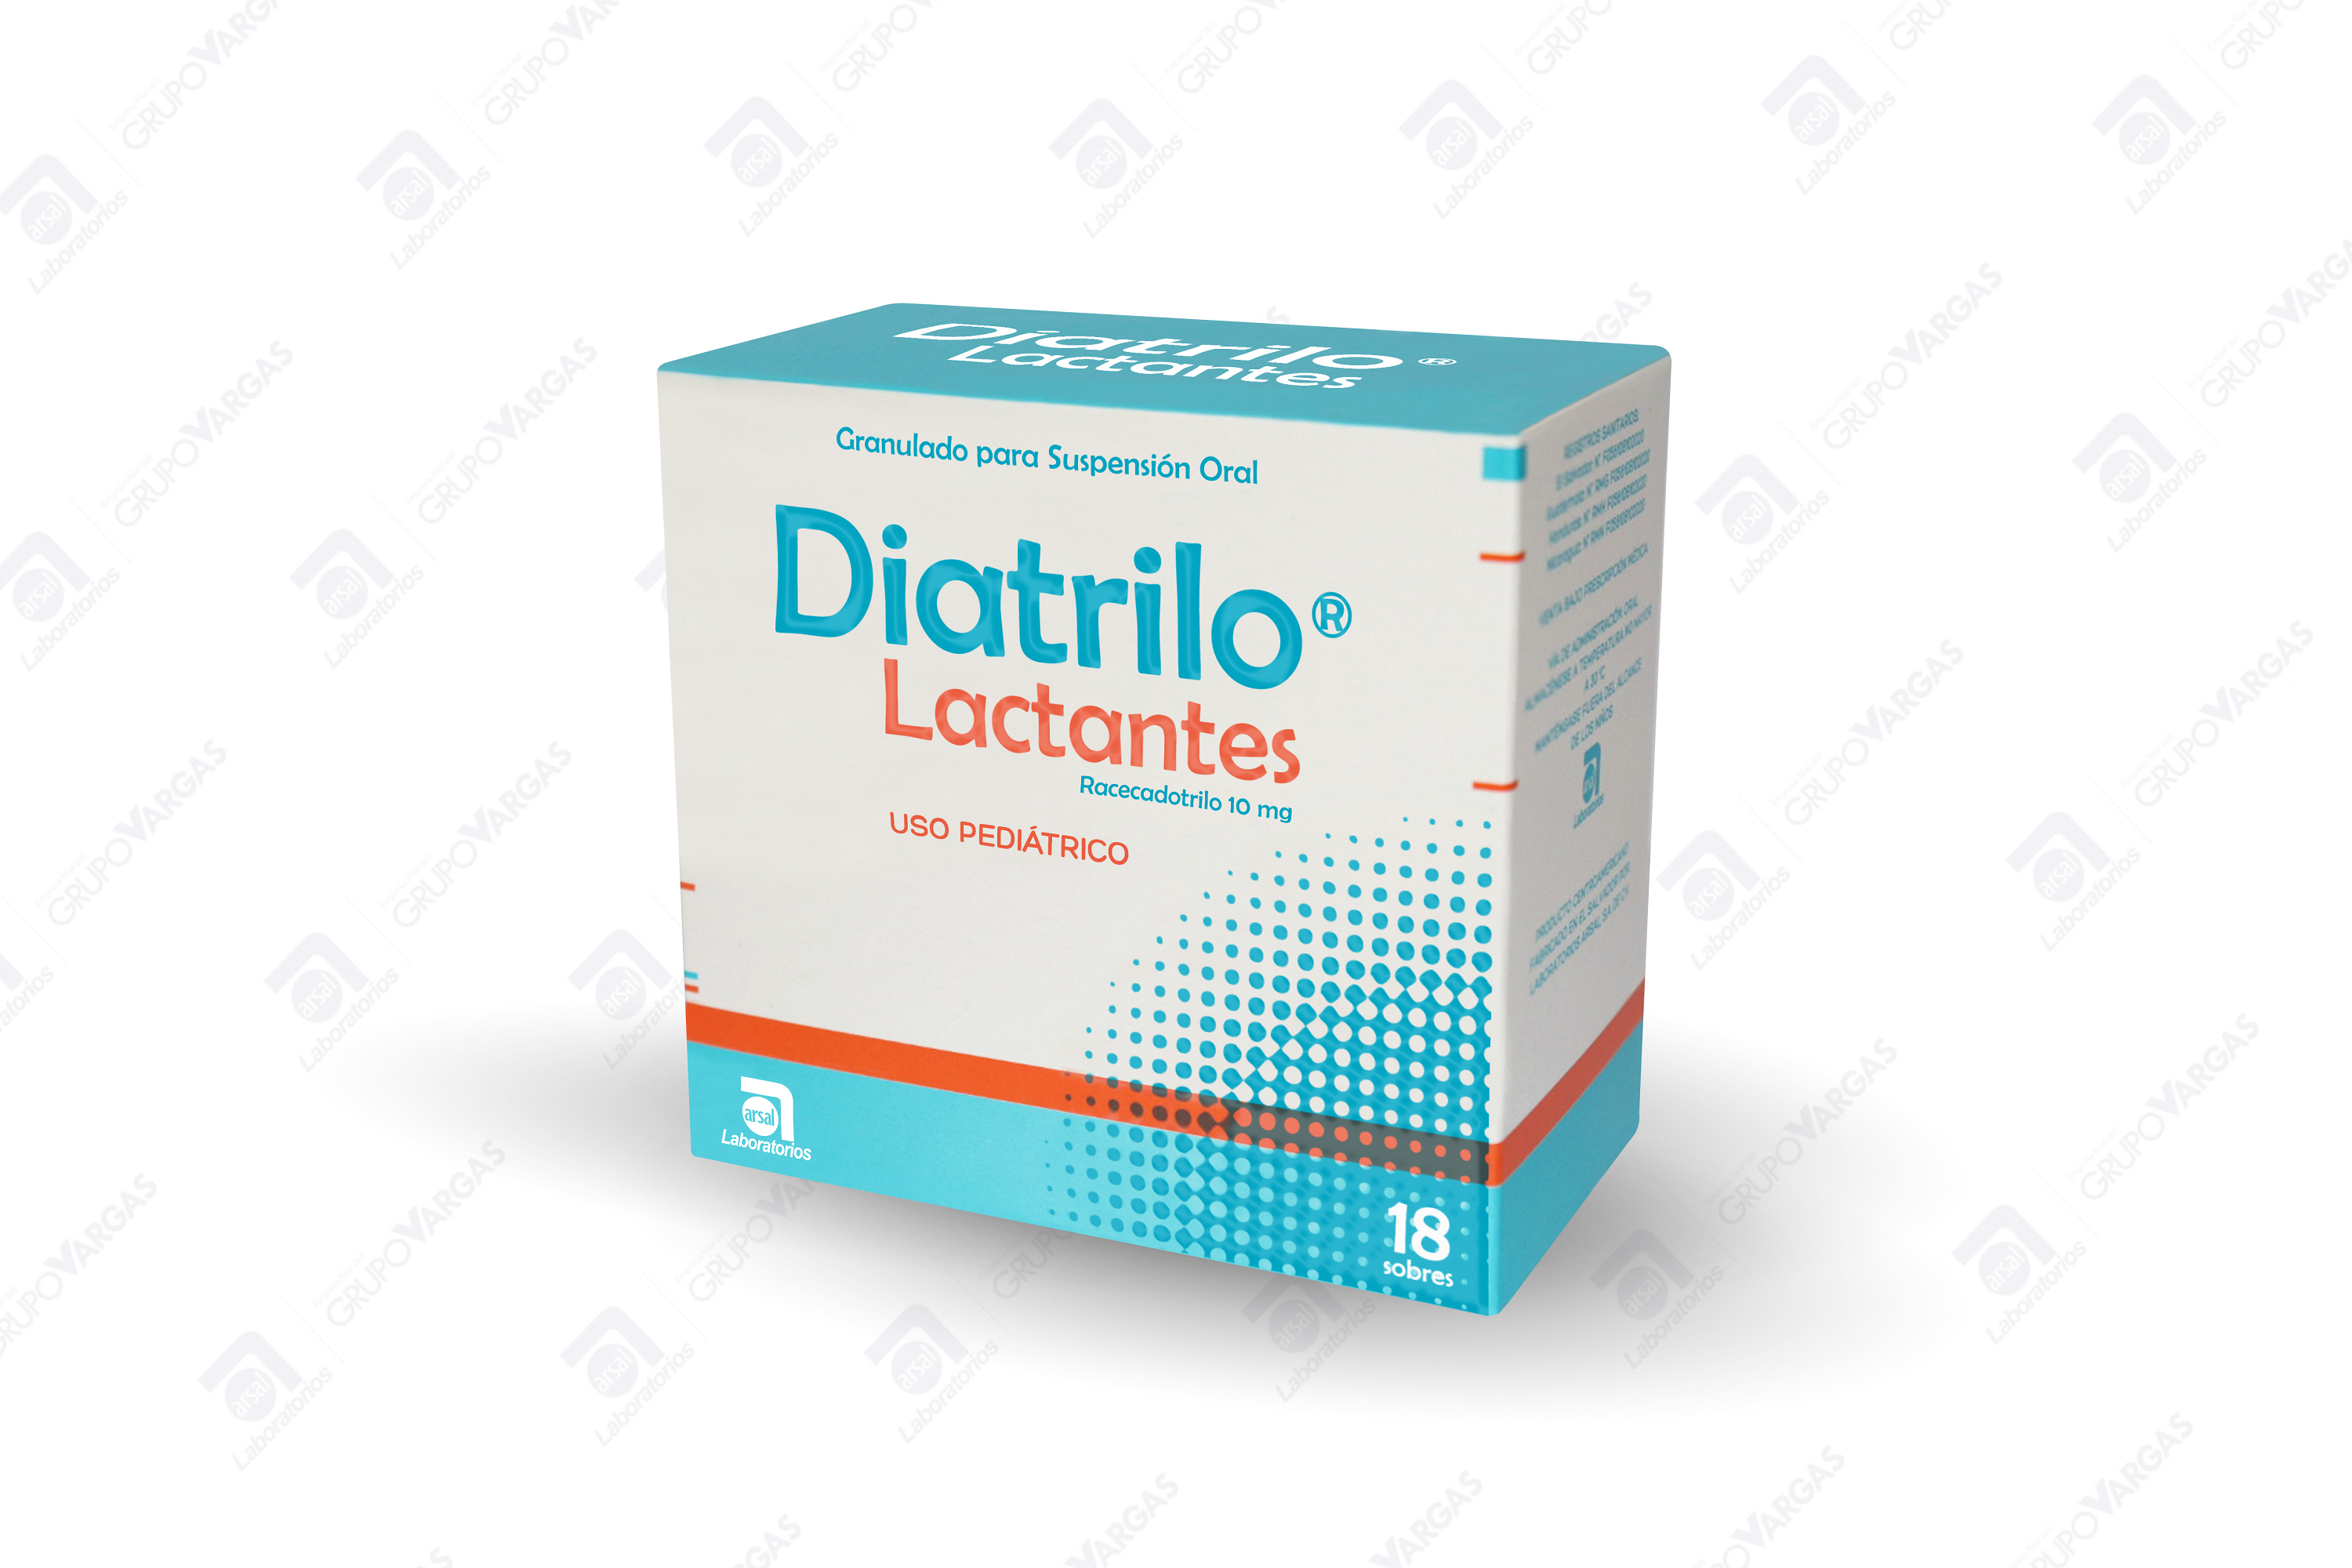 Diatrilo Lactantes 10 mg Granulado para Suspensión Oral